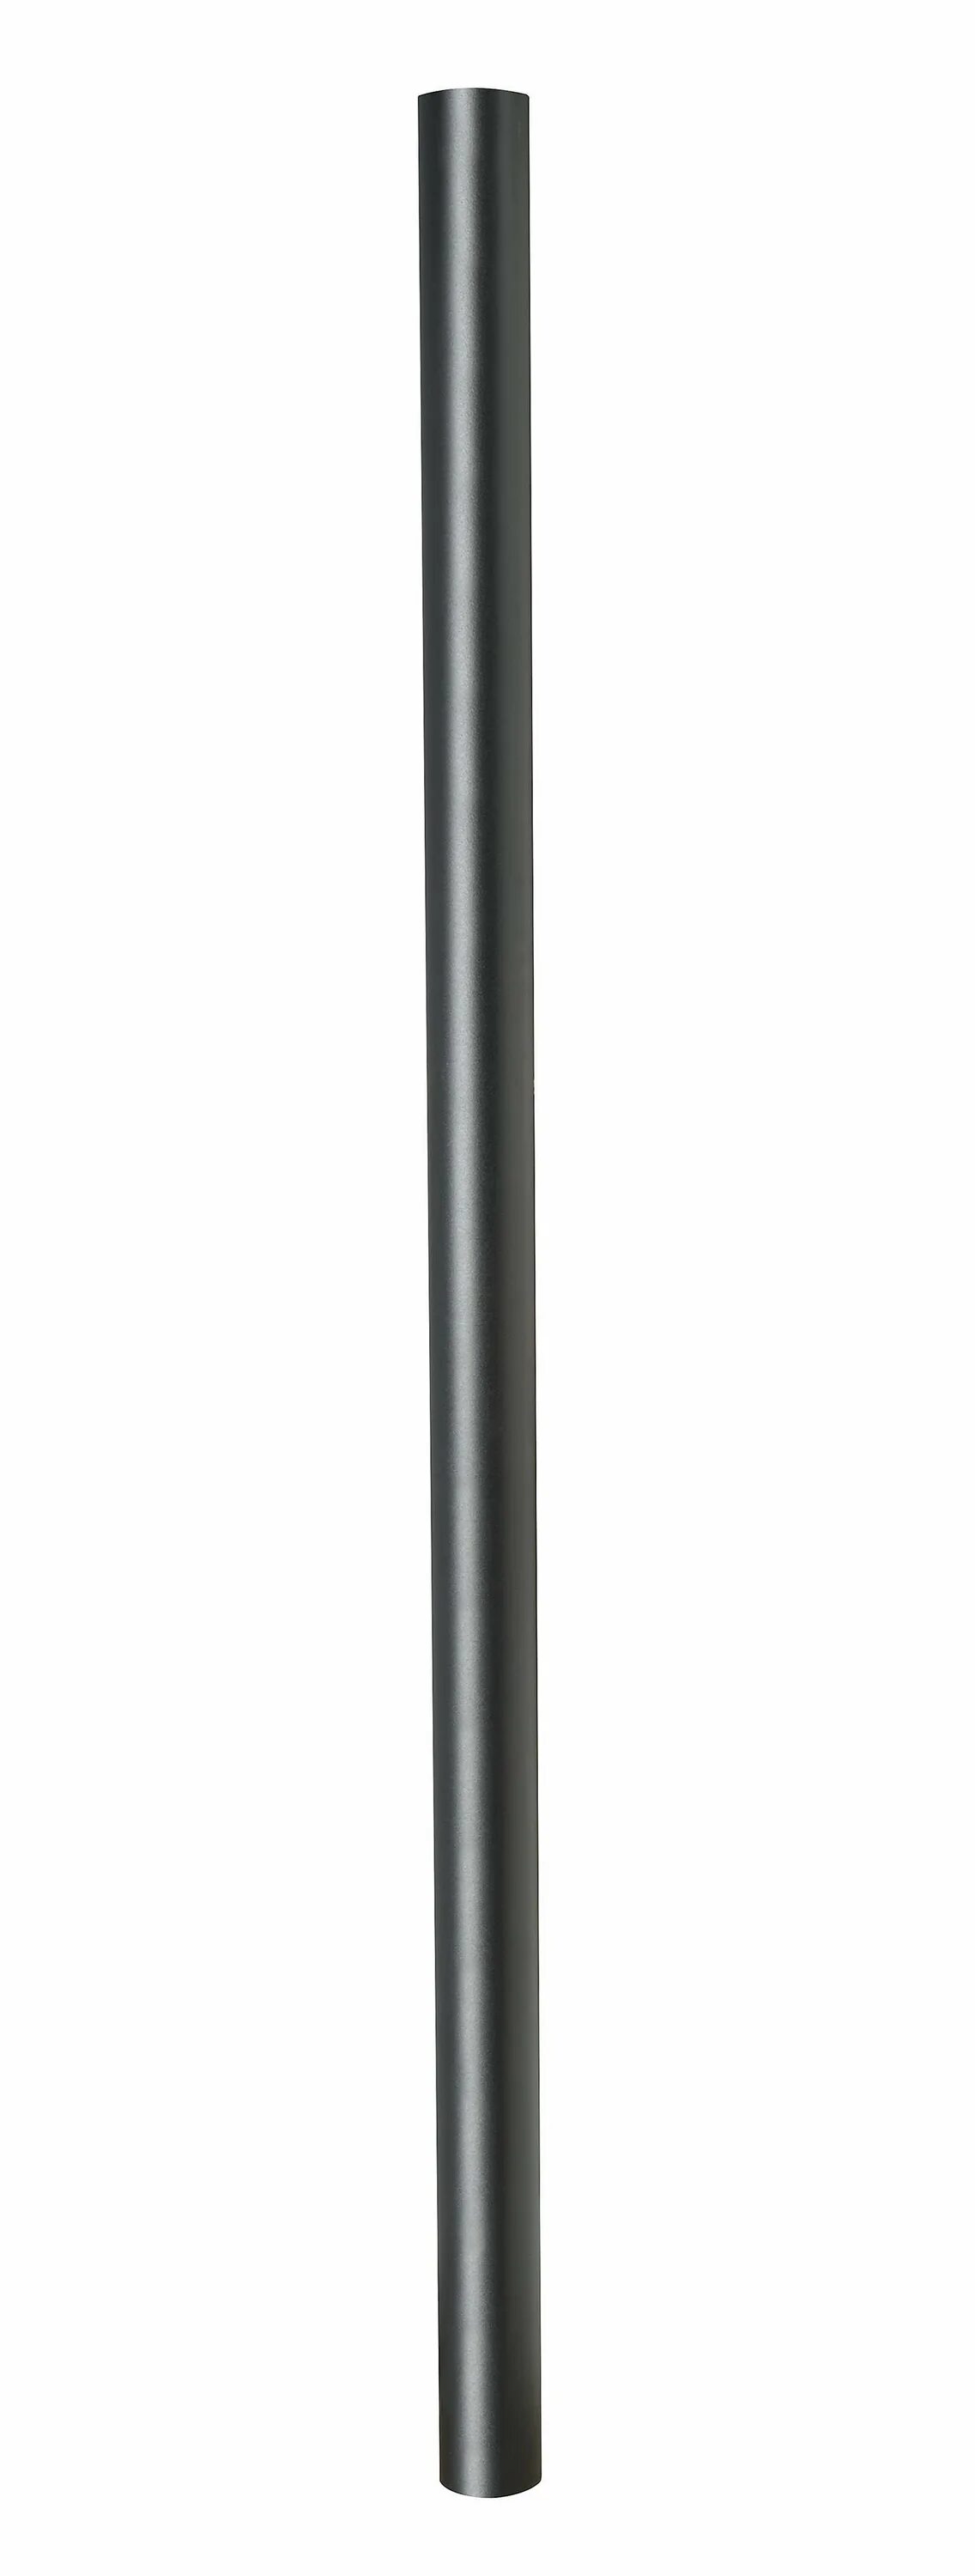 Metal Pole Pillars Set. Black Pole Казань. Metal Pole Store. LP-40 Metallic Black. Black pole